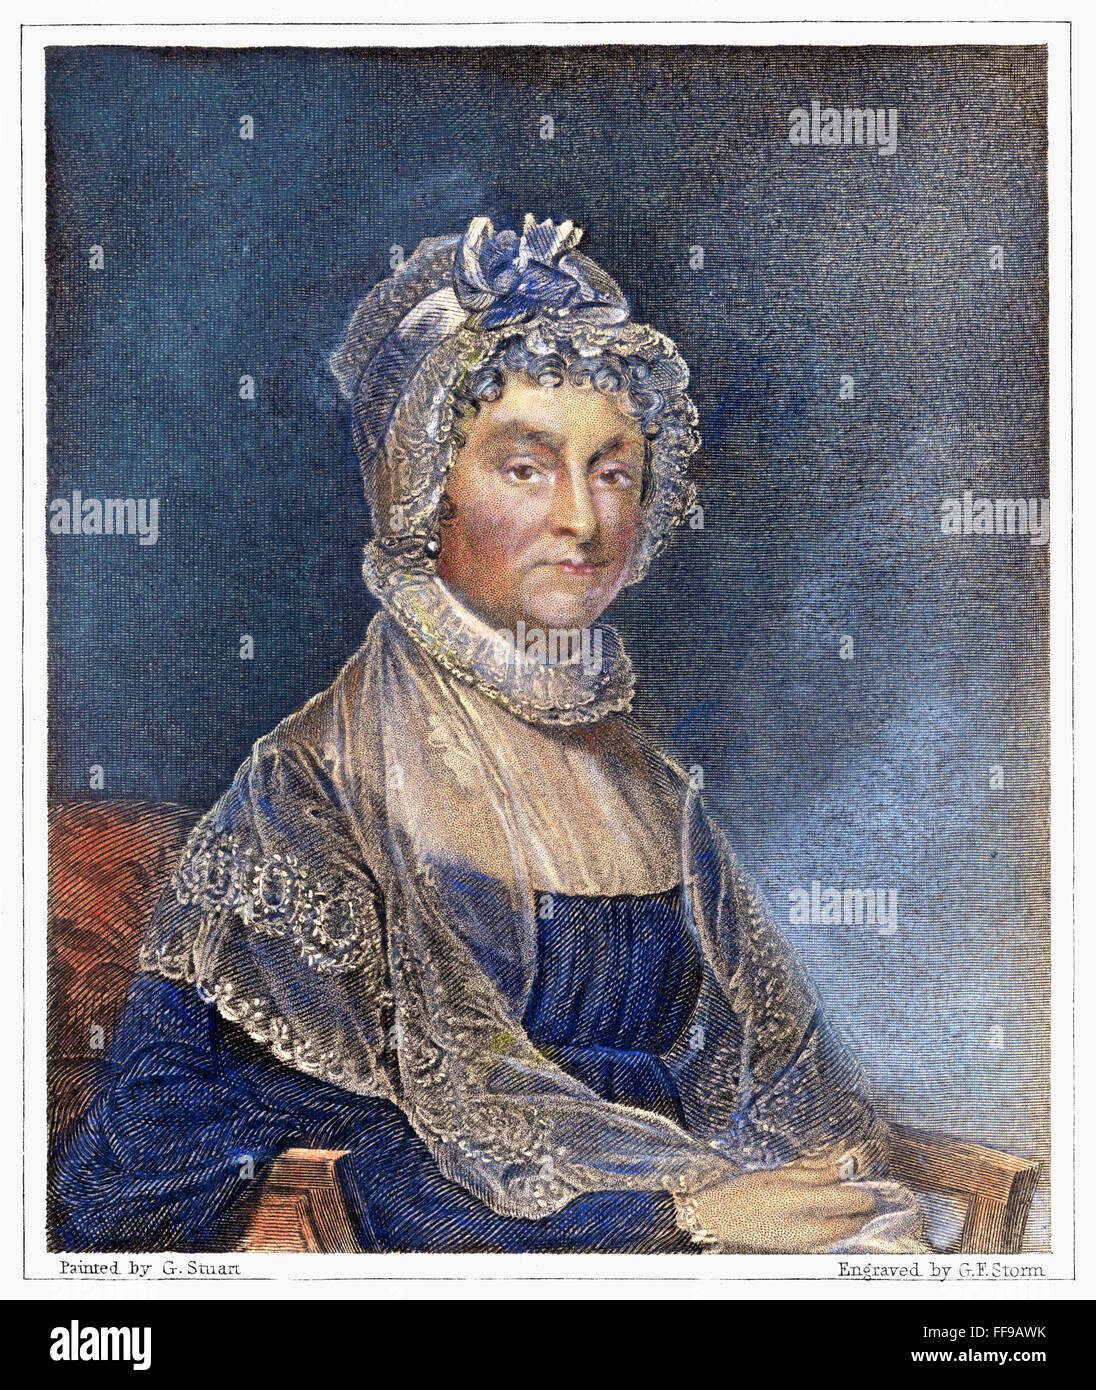 ABIGAIL ADAMS (1744-1818). /nMrs. John Adams, amerikanische First Lady. Linie und stupfen Kupferstich von g.f. Sturm nach Gilbert Stuart. Stockfoto